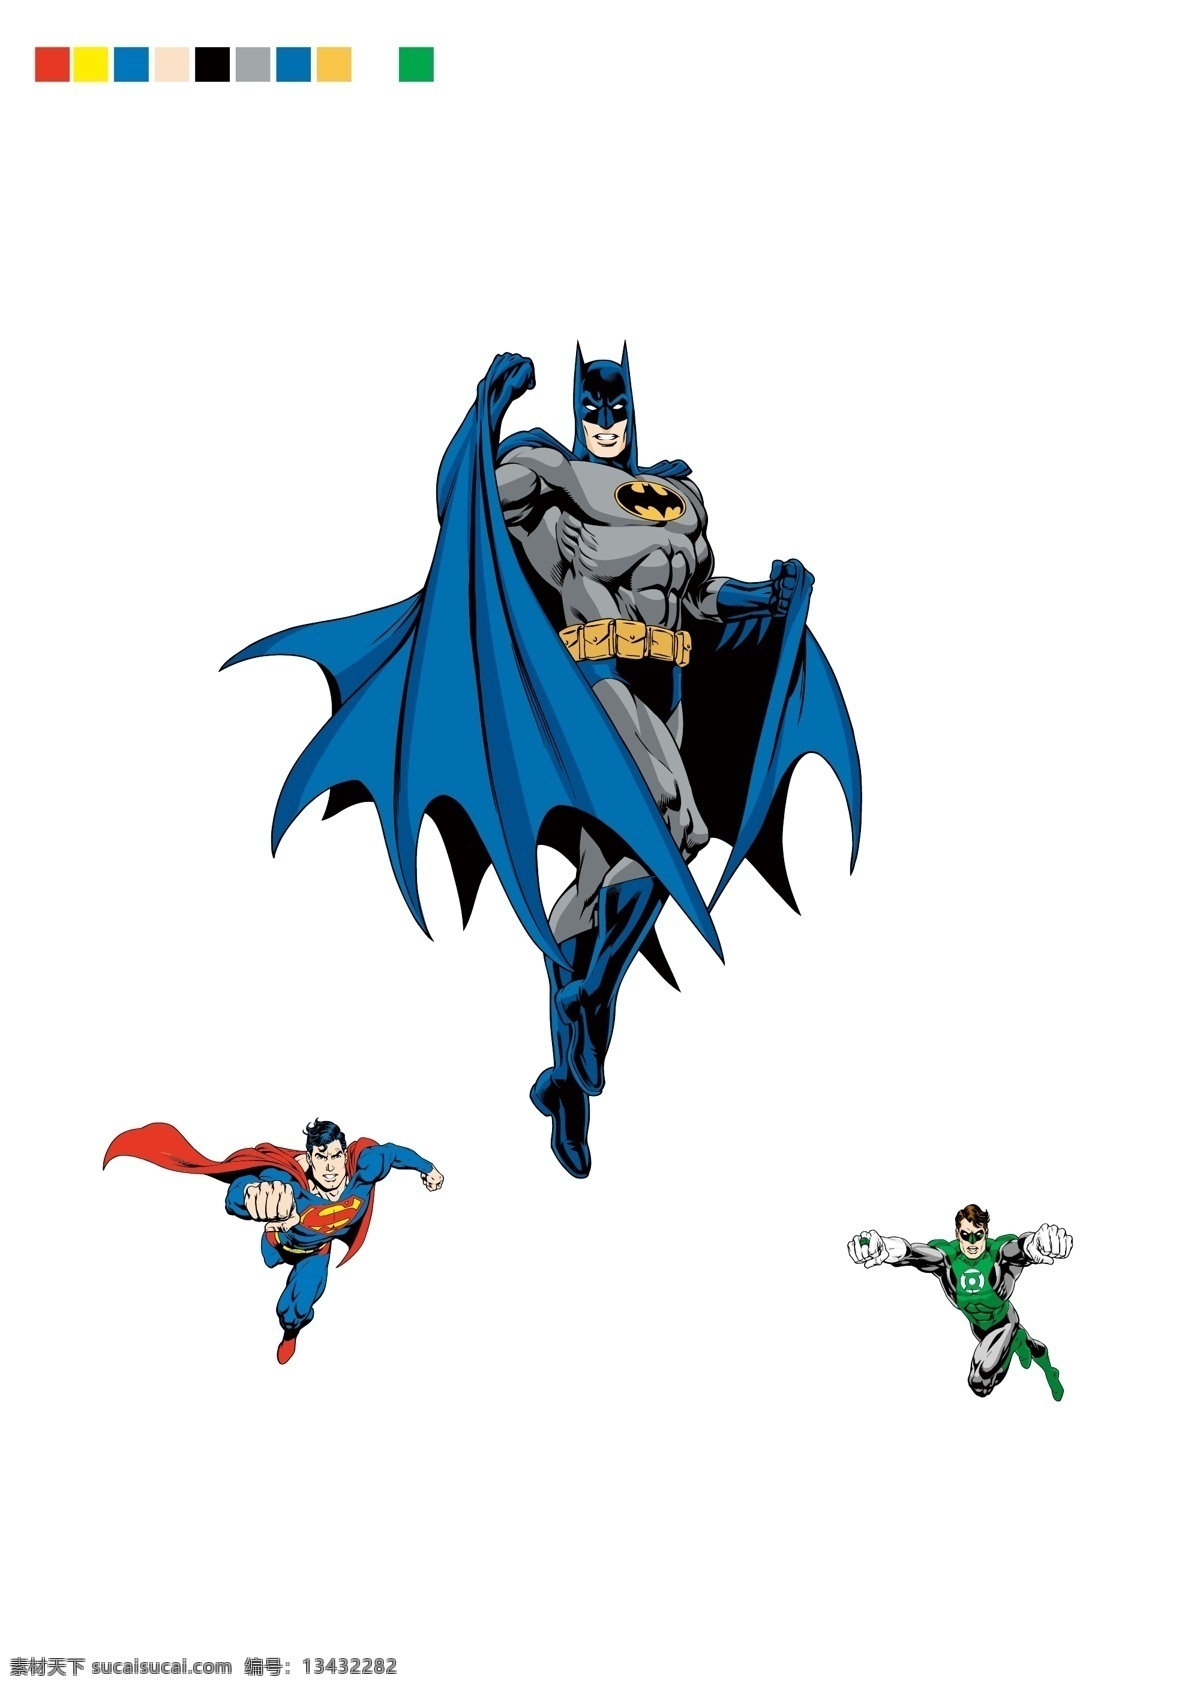 超人 蝙蝠侠 superman batman 华纳 dc漫画 超级英雄 英雄联盟 卡通形象 其他人物 矢量人物 矢量